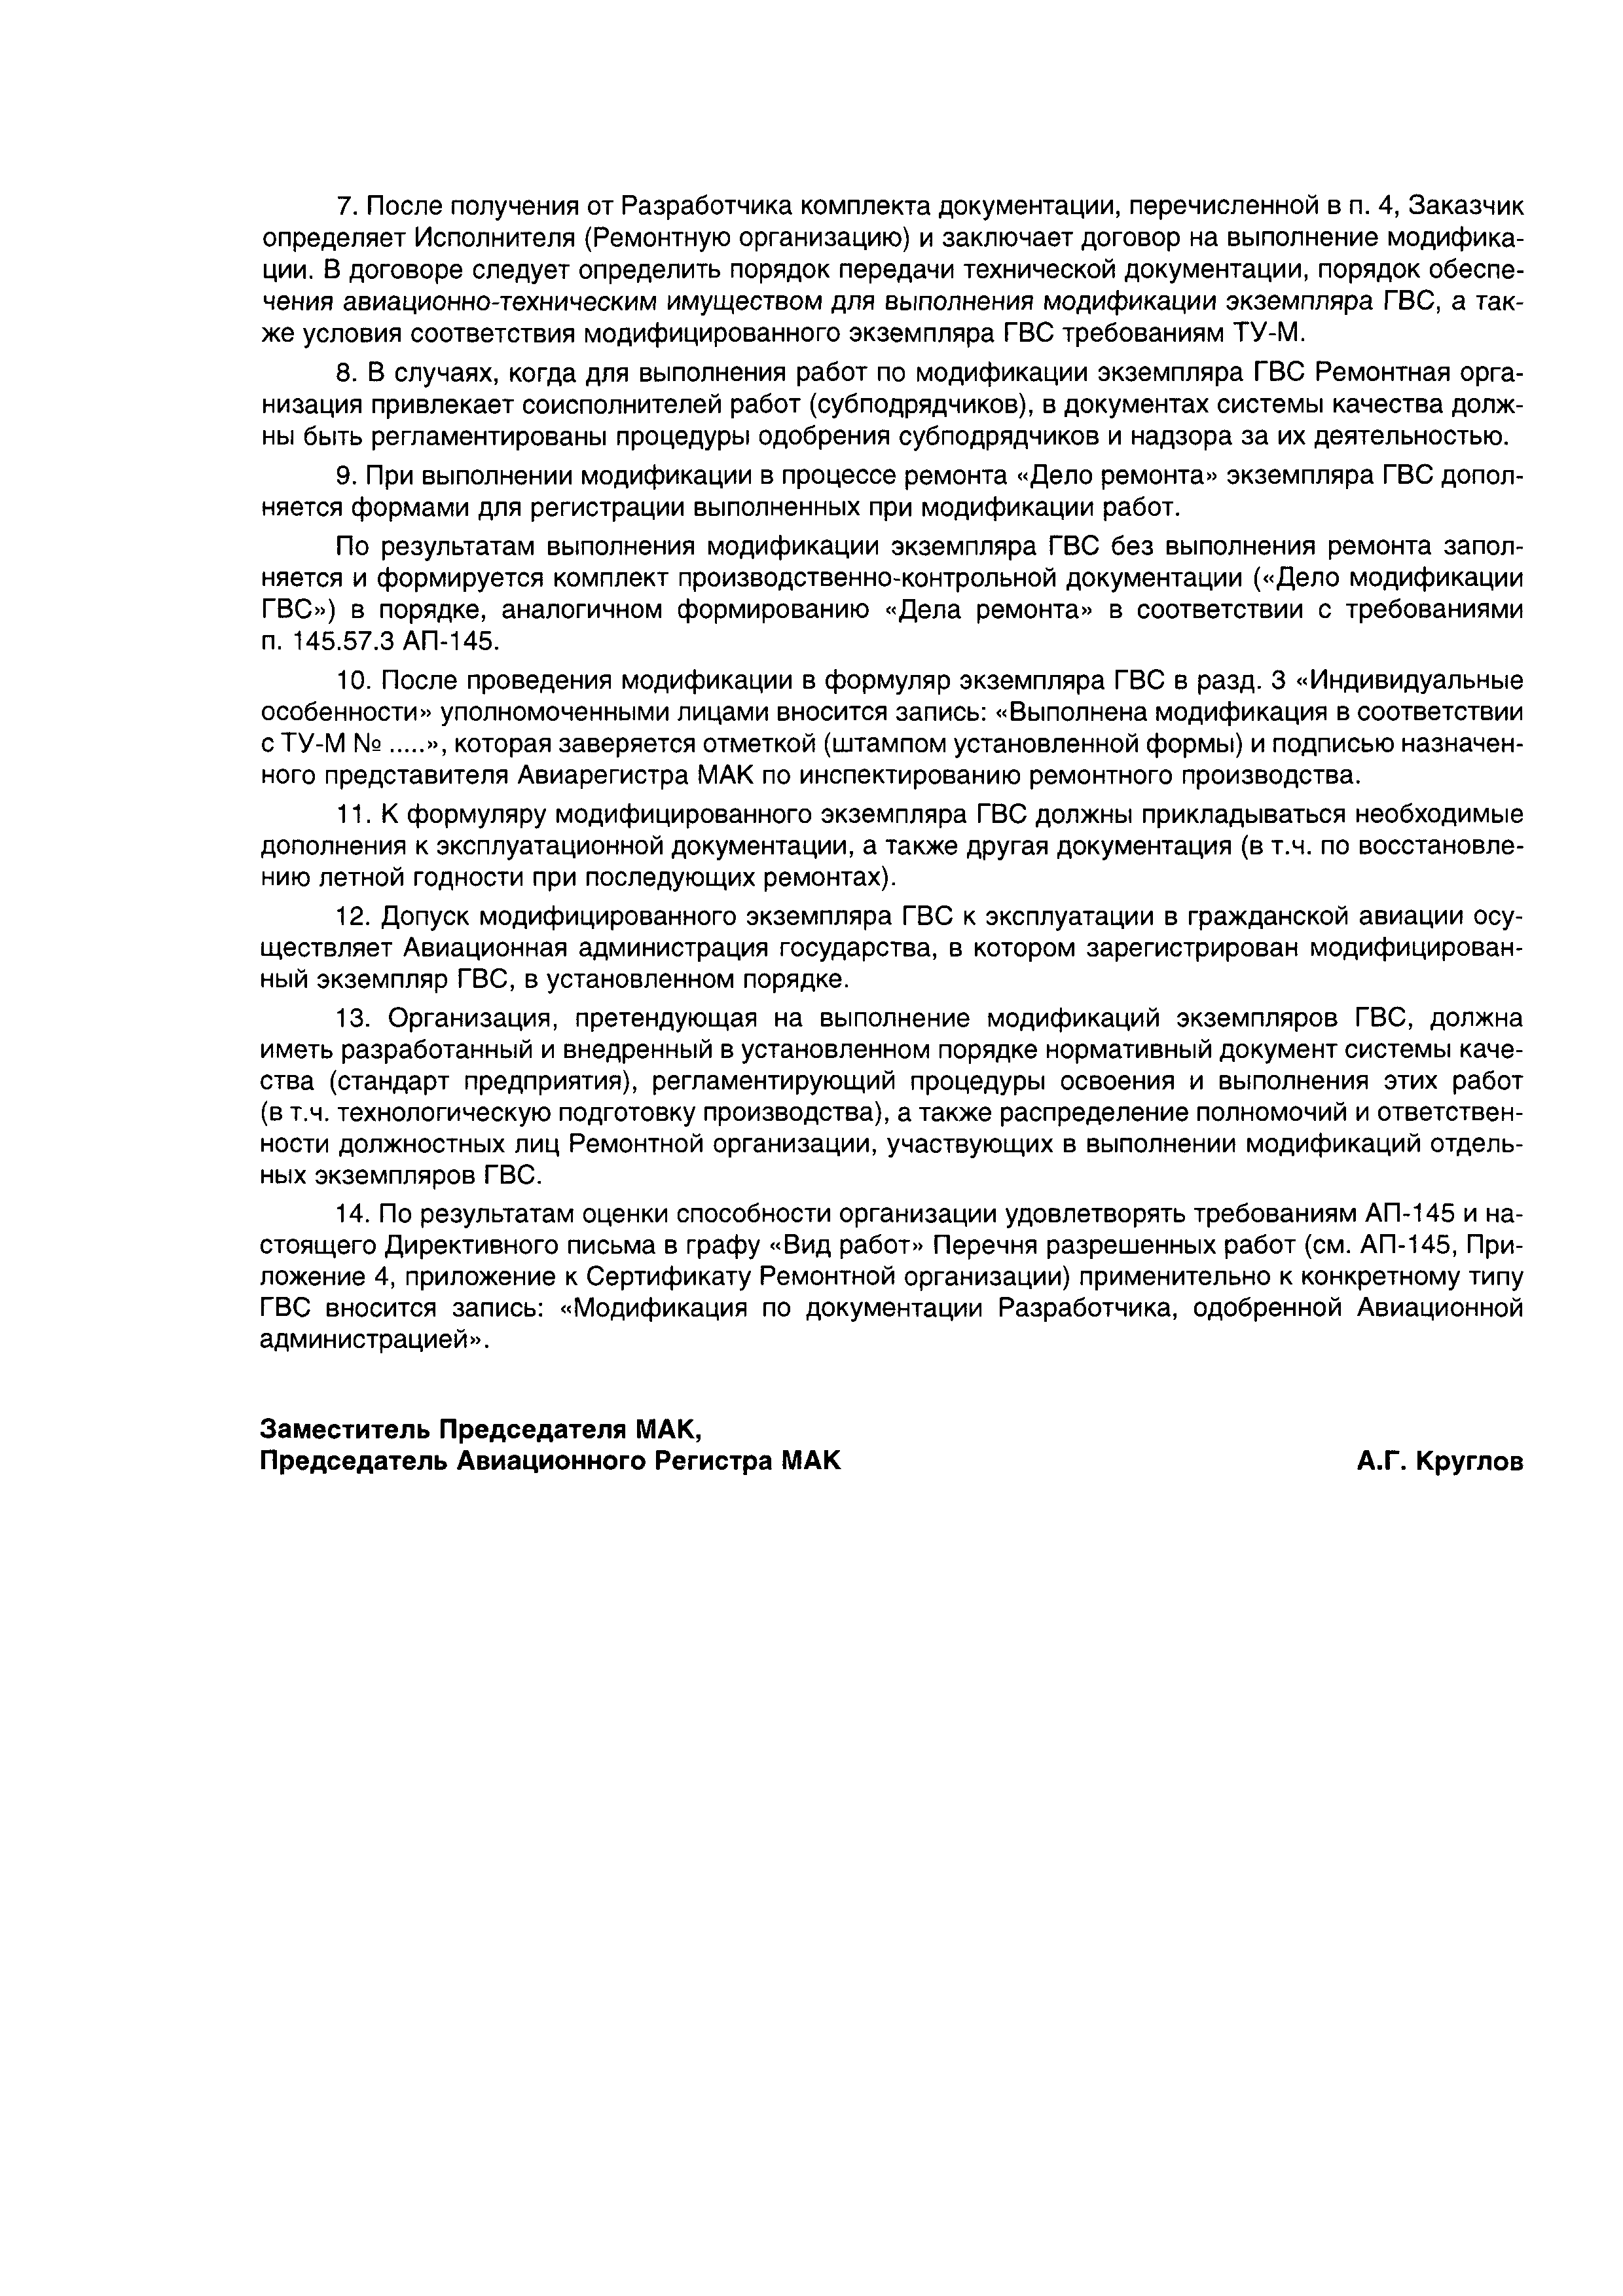 Директивное письмо 4-2002